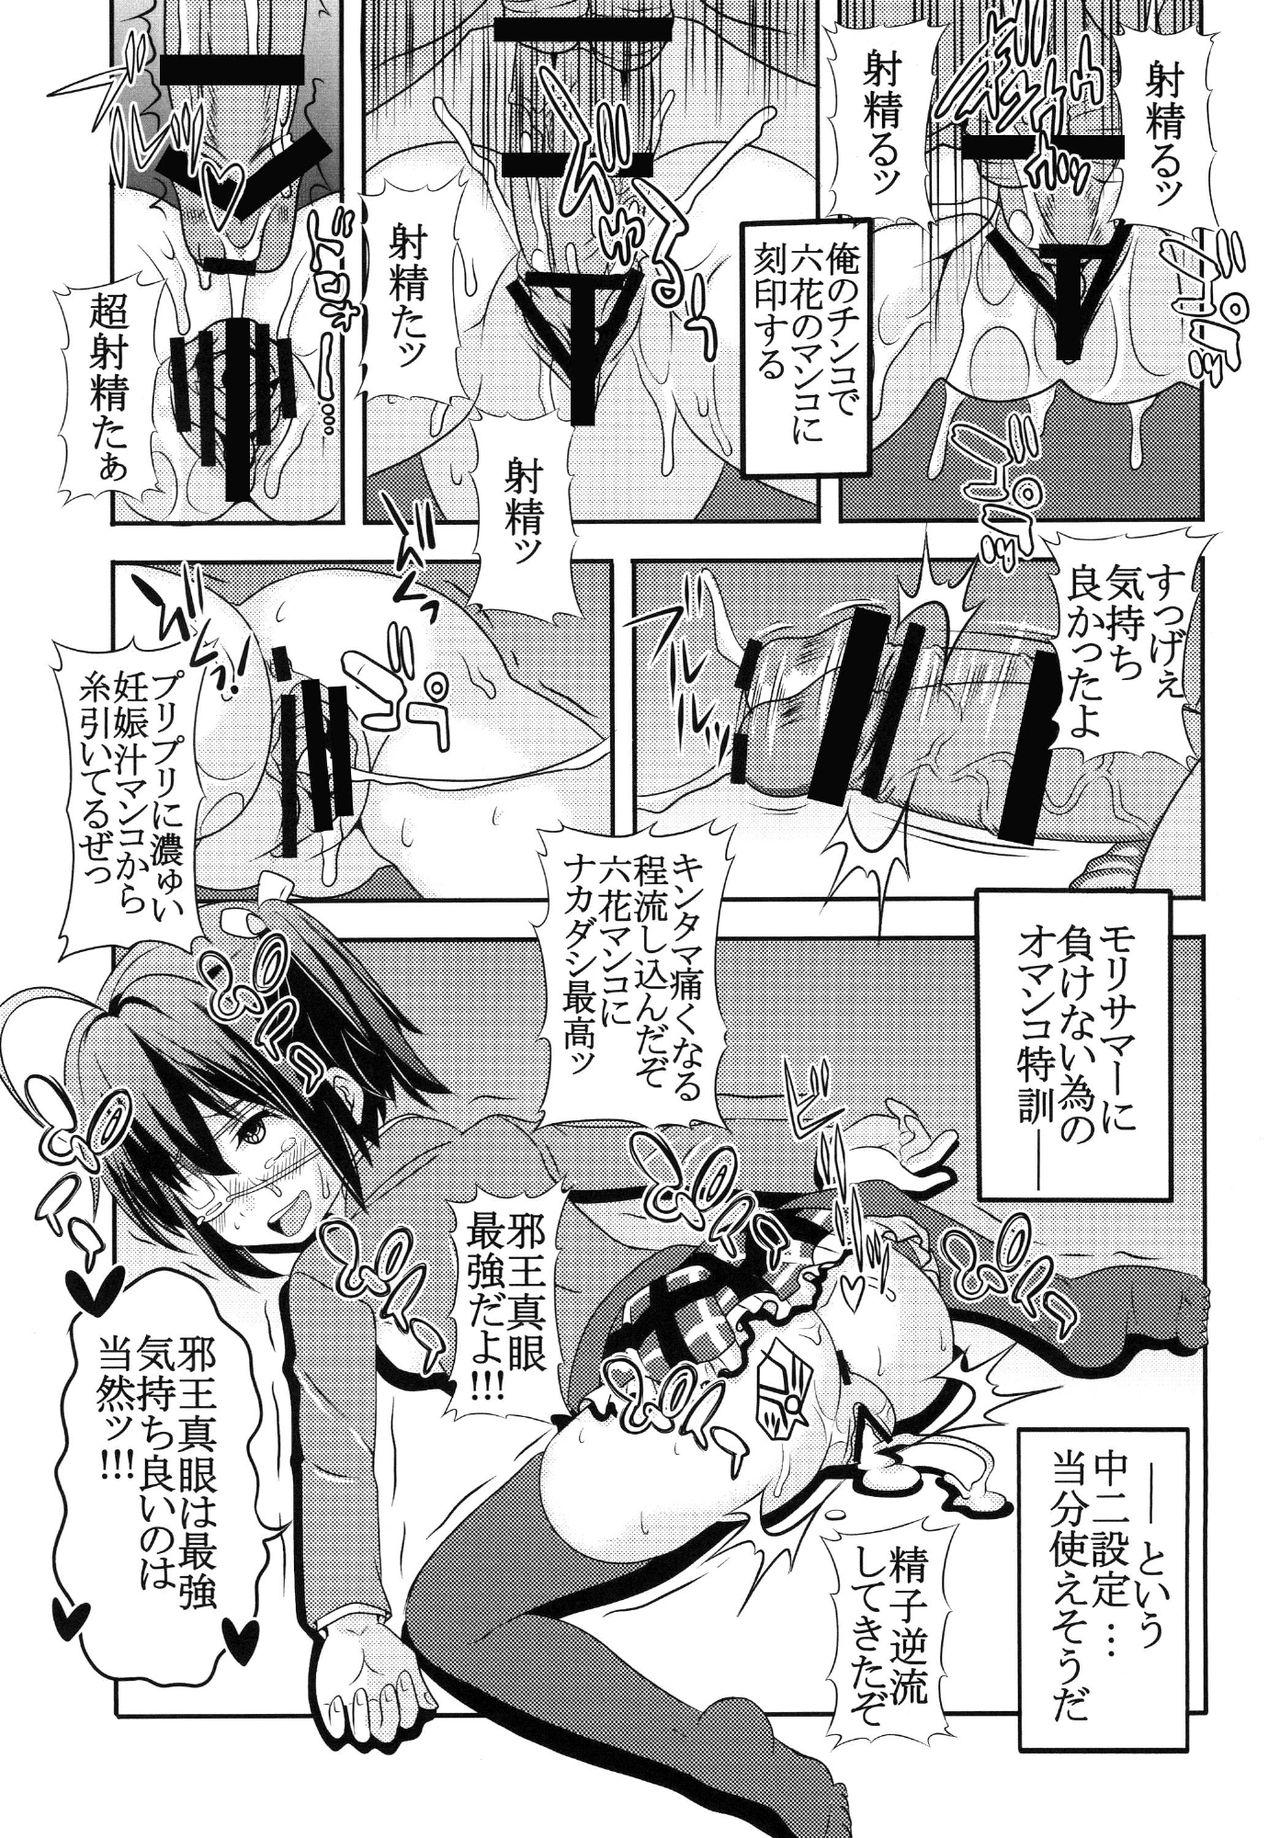 Butt Sex Dekomori Muichaimashita - Chuunibyou demo koi ga shitai Tinder - Page 11